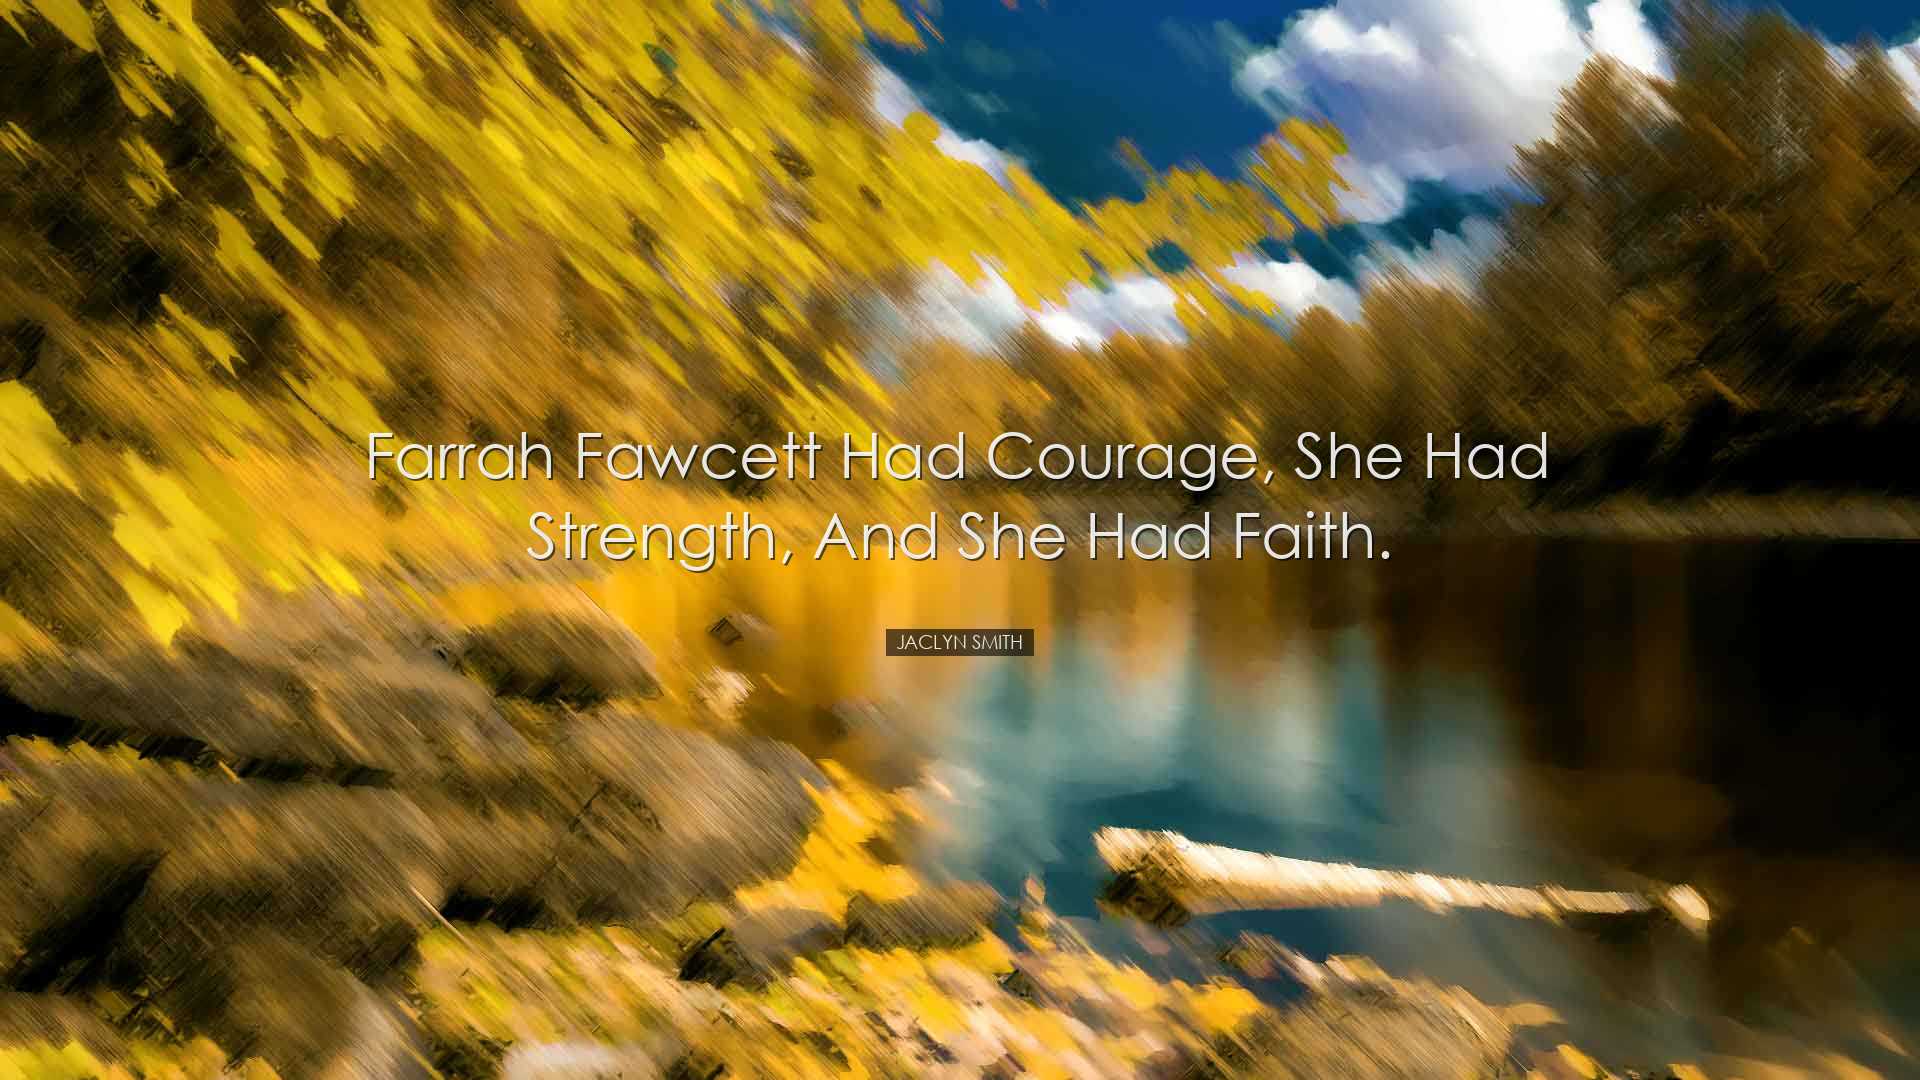 Farrah Fawcett had courage, she had strength, and she had faith. -